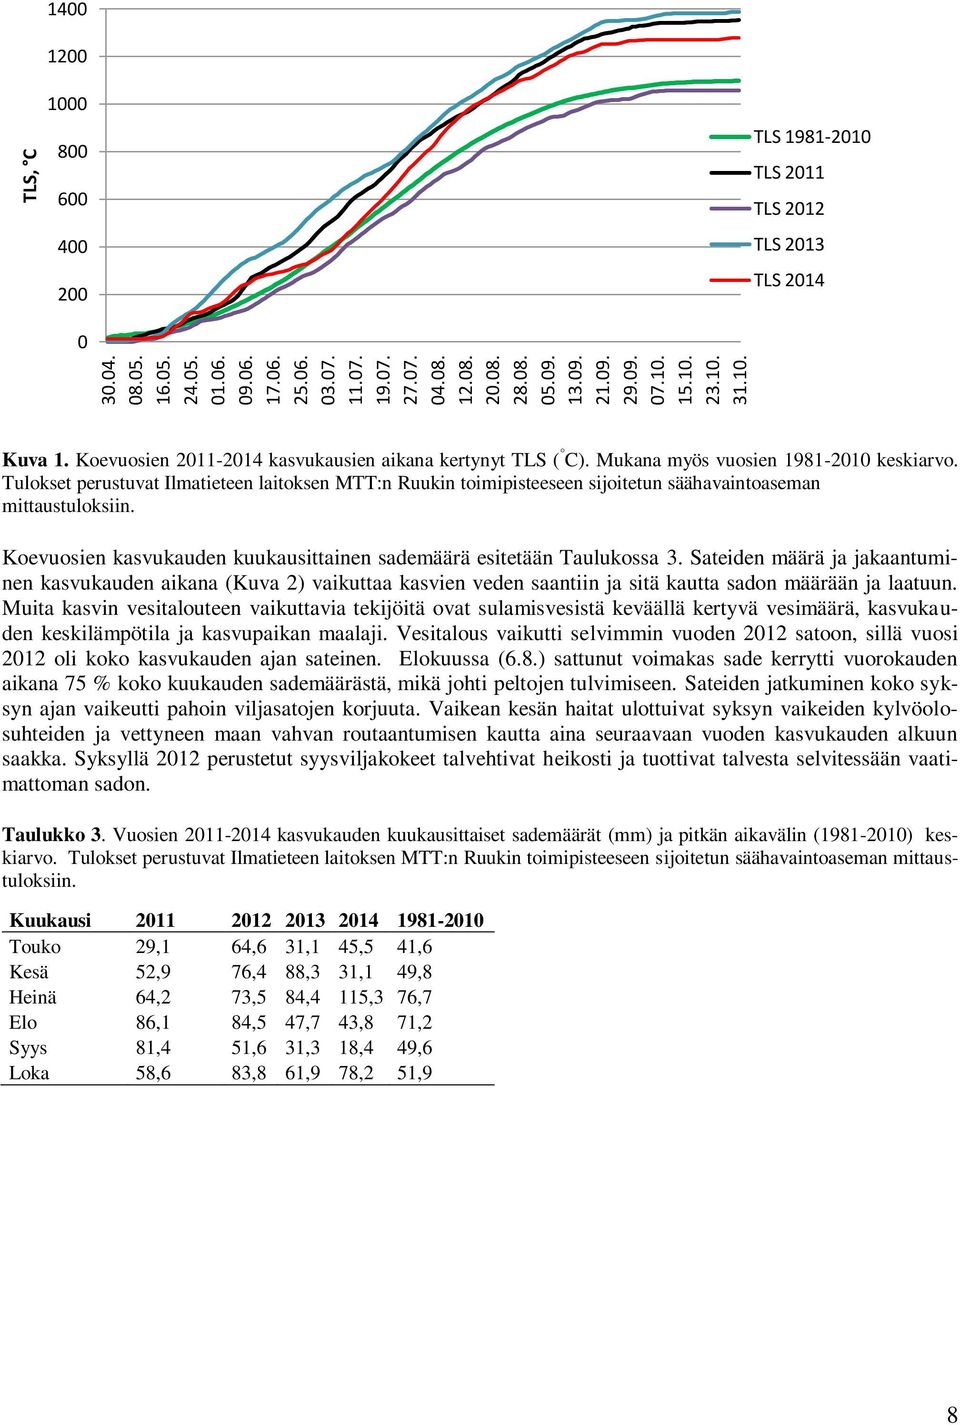 Mukana myös vuosien 1981-2010 keskiarvo. Tulokset perustuvat Ilmatieteen laitoksen MTT:n Ruukin toimipisteeseen sijoitetun säähavaintoaseman mittaustuloksiin.